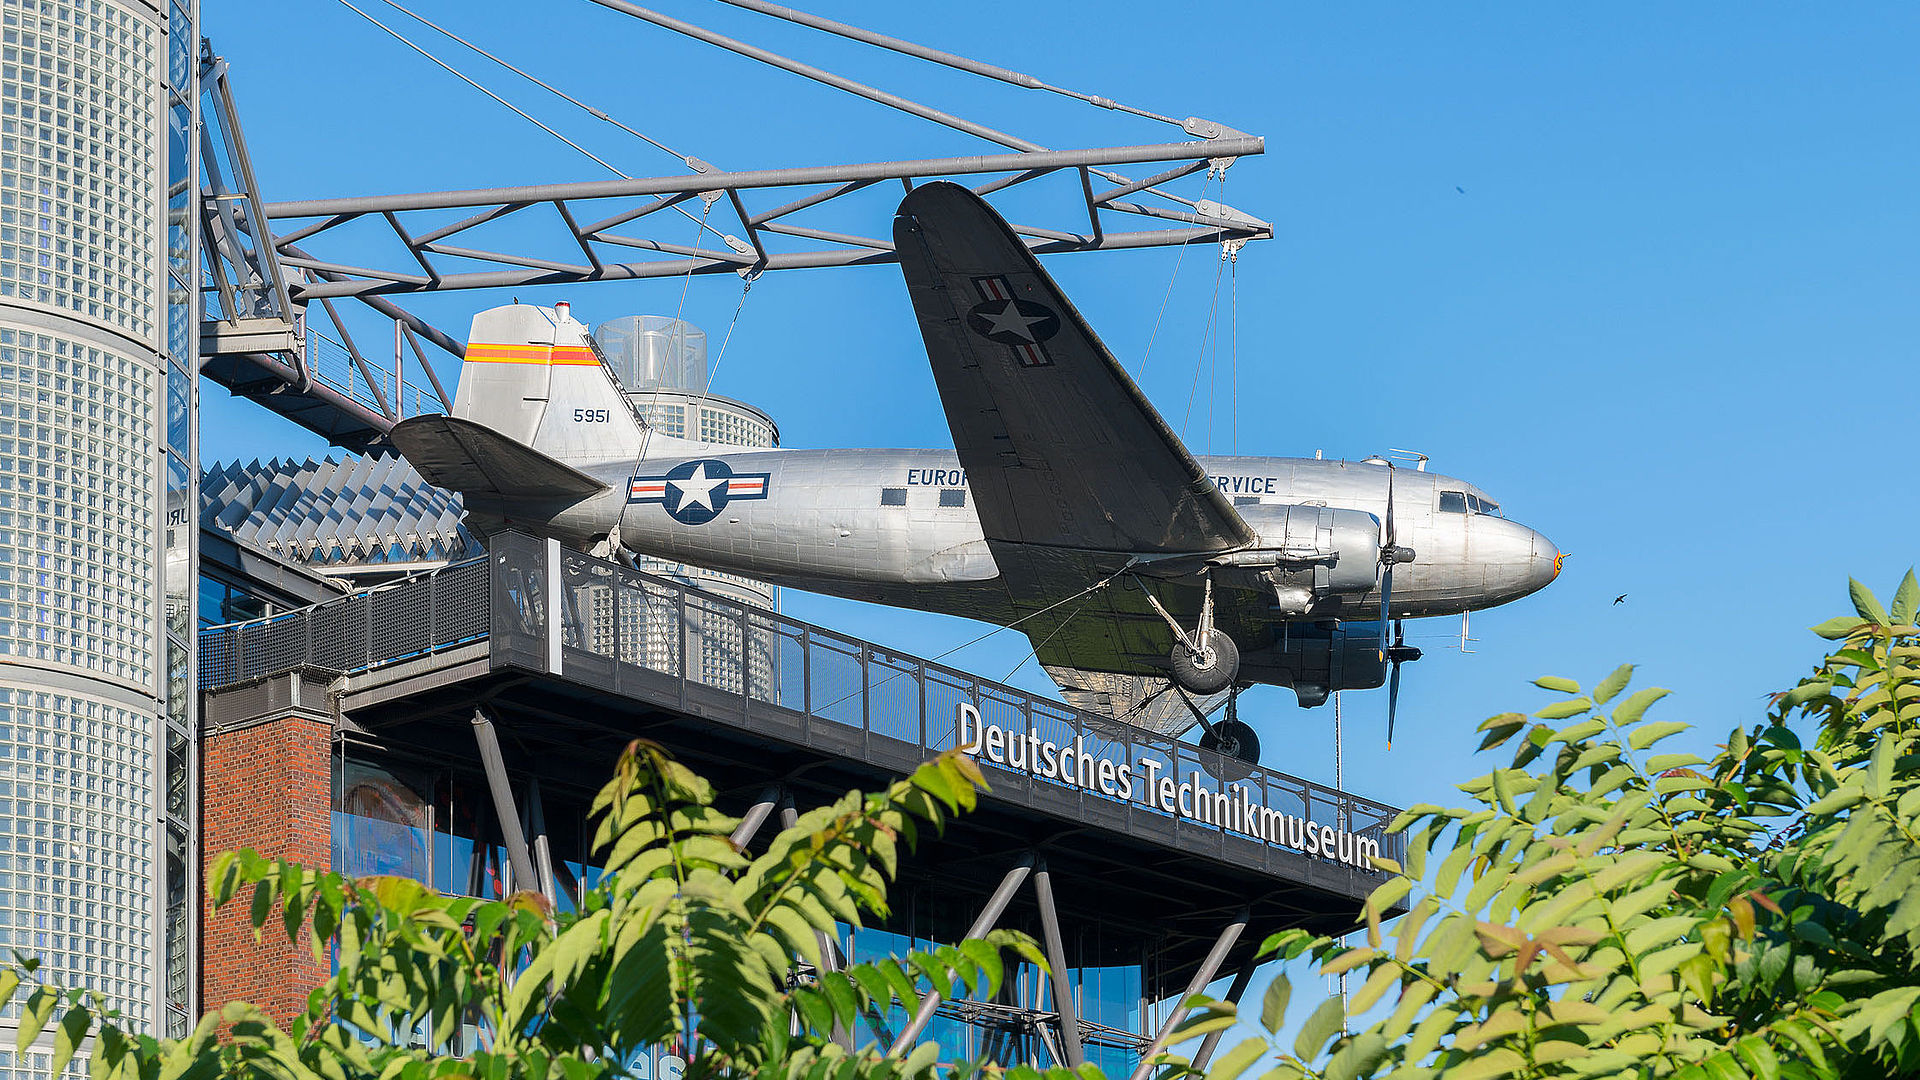 Ein Neubaugebäude mit Glasfassade. An einer Stahlkonstruktion auf dem Dach hängt ein Flugzeug. Unter dem Flugzeug hängt eine weiße Leuchtschrift „Deutsches Technikmuseum“.